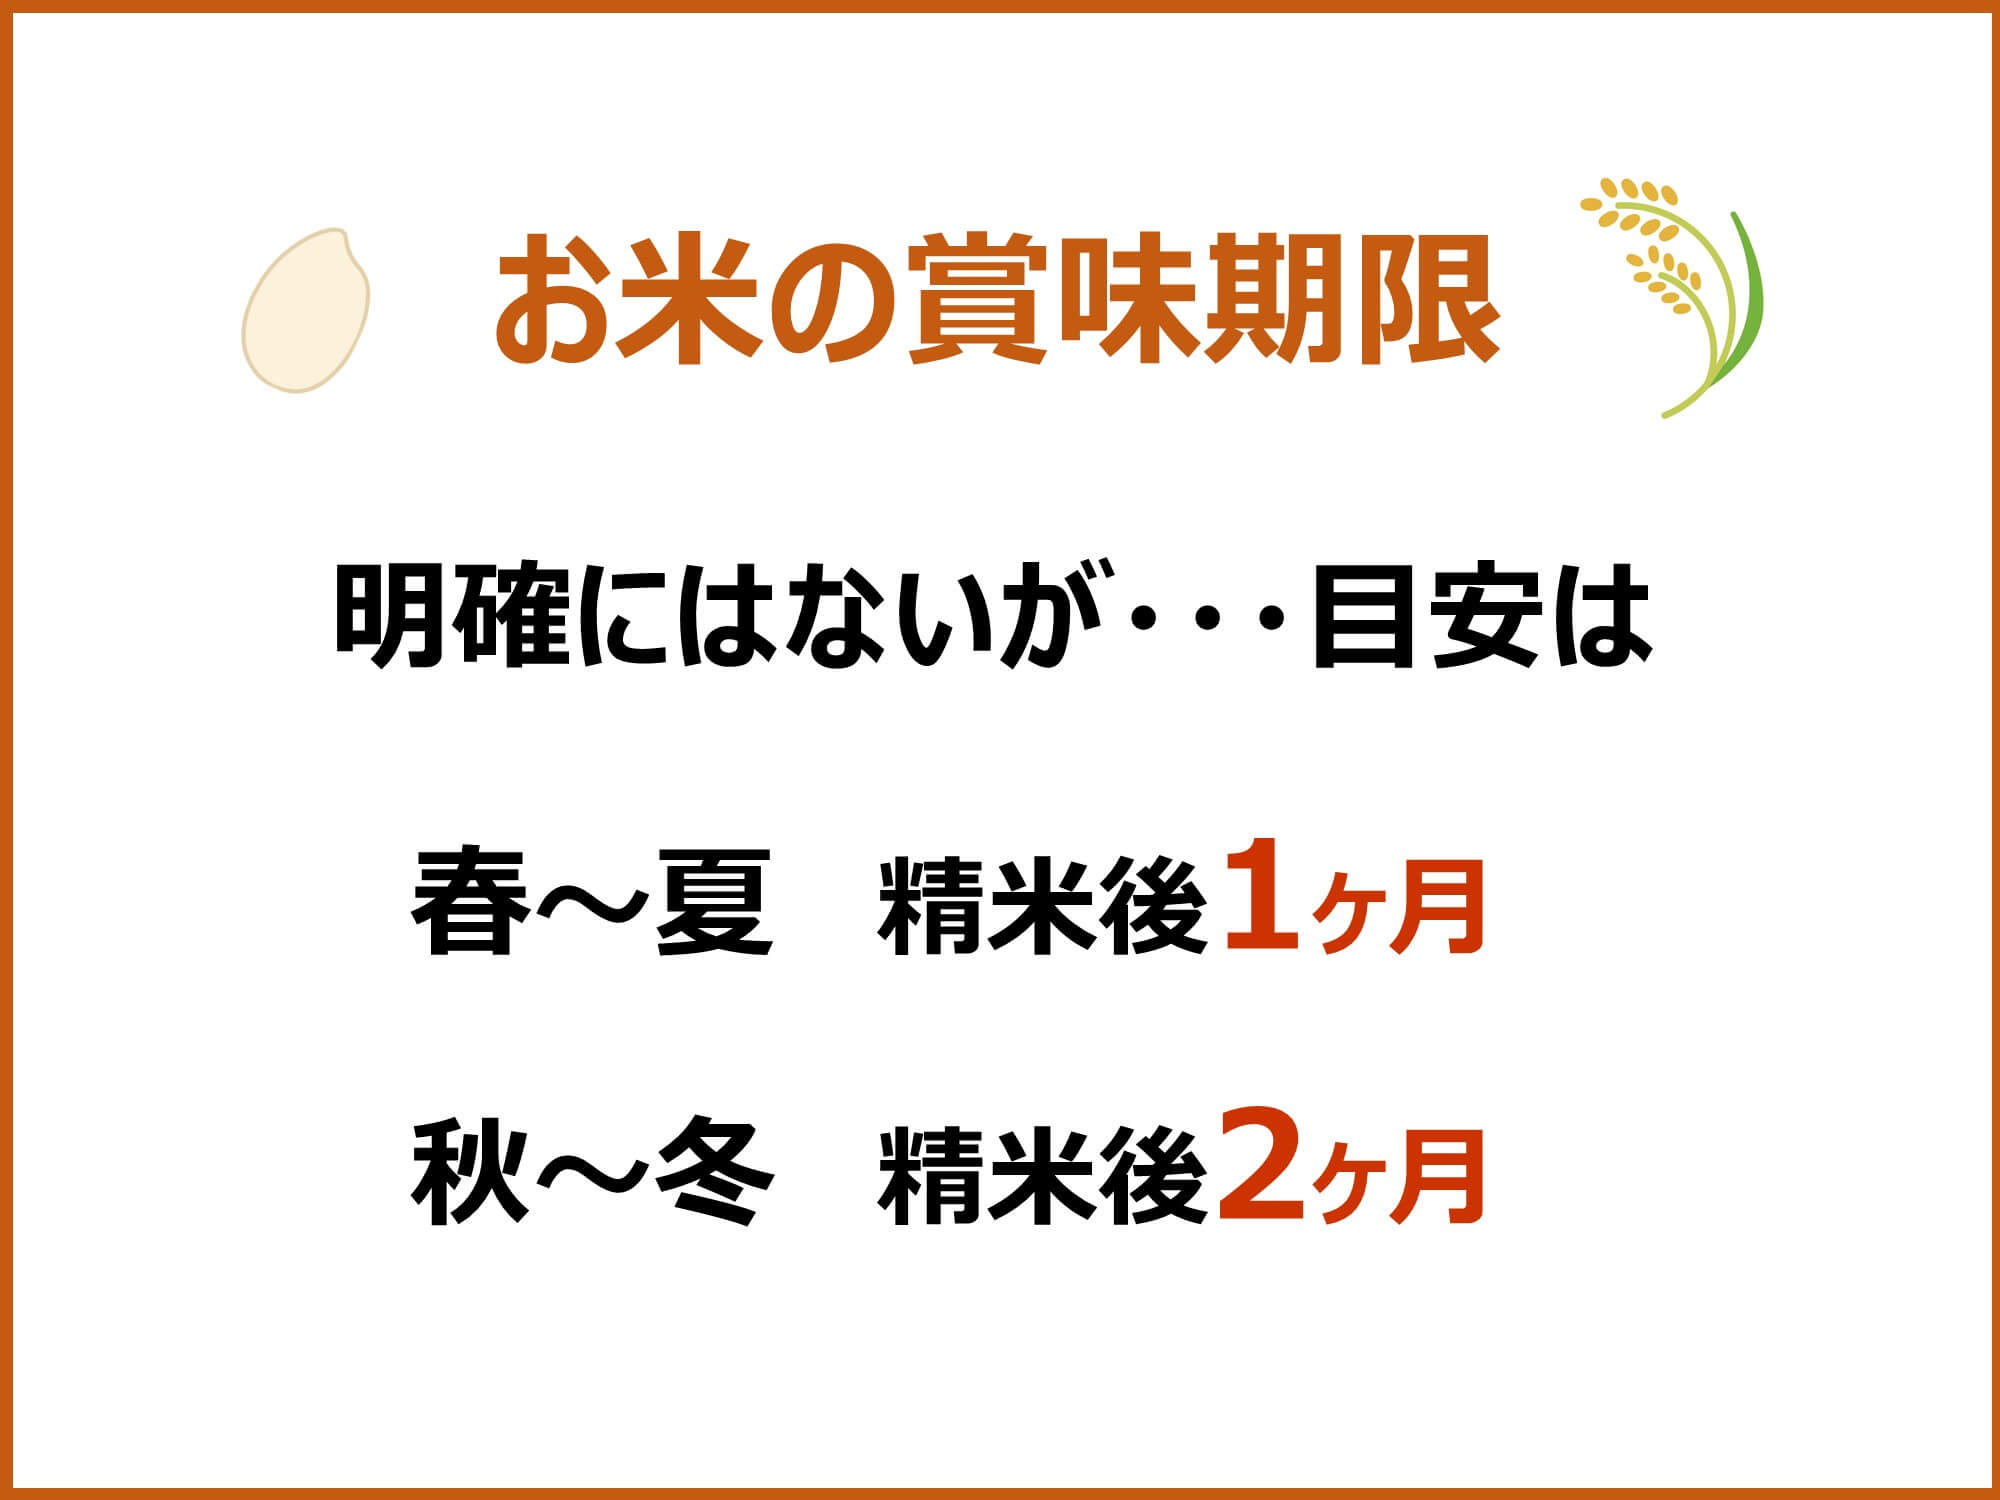 お米の賞味期限は、春～夏は精米後1ヶ月、秋～冬は精米後2ヶ月